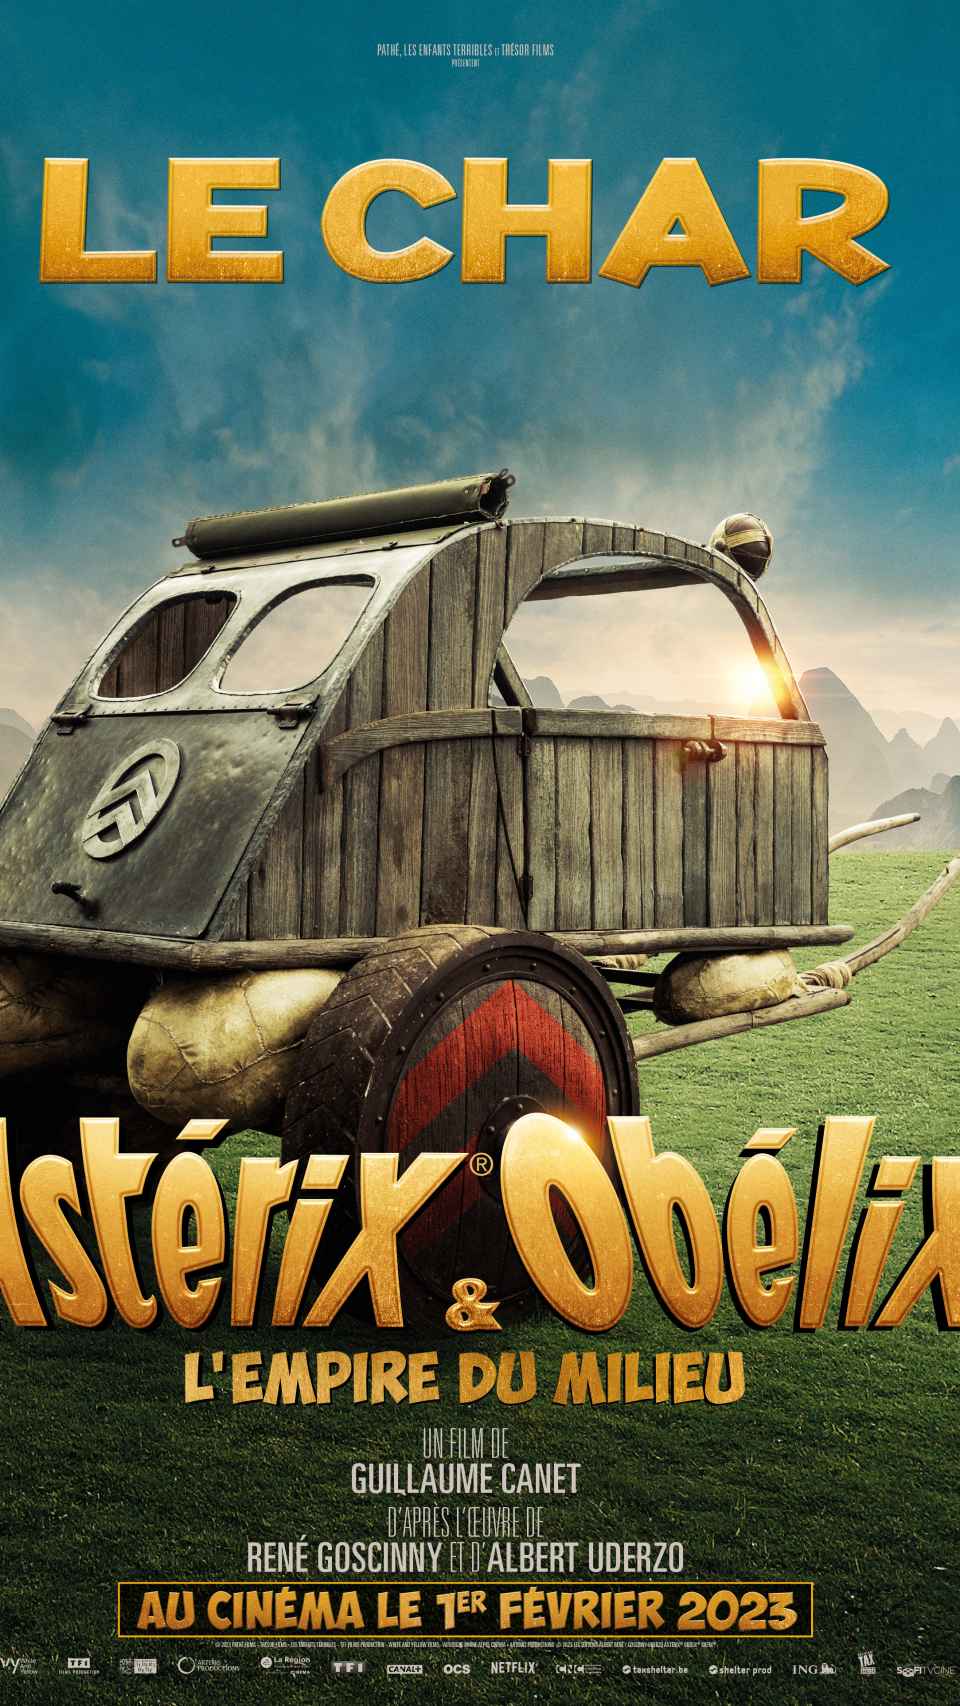 Cartel de la película de Astérix y Obélix.